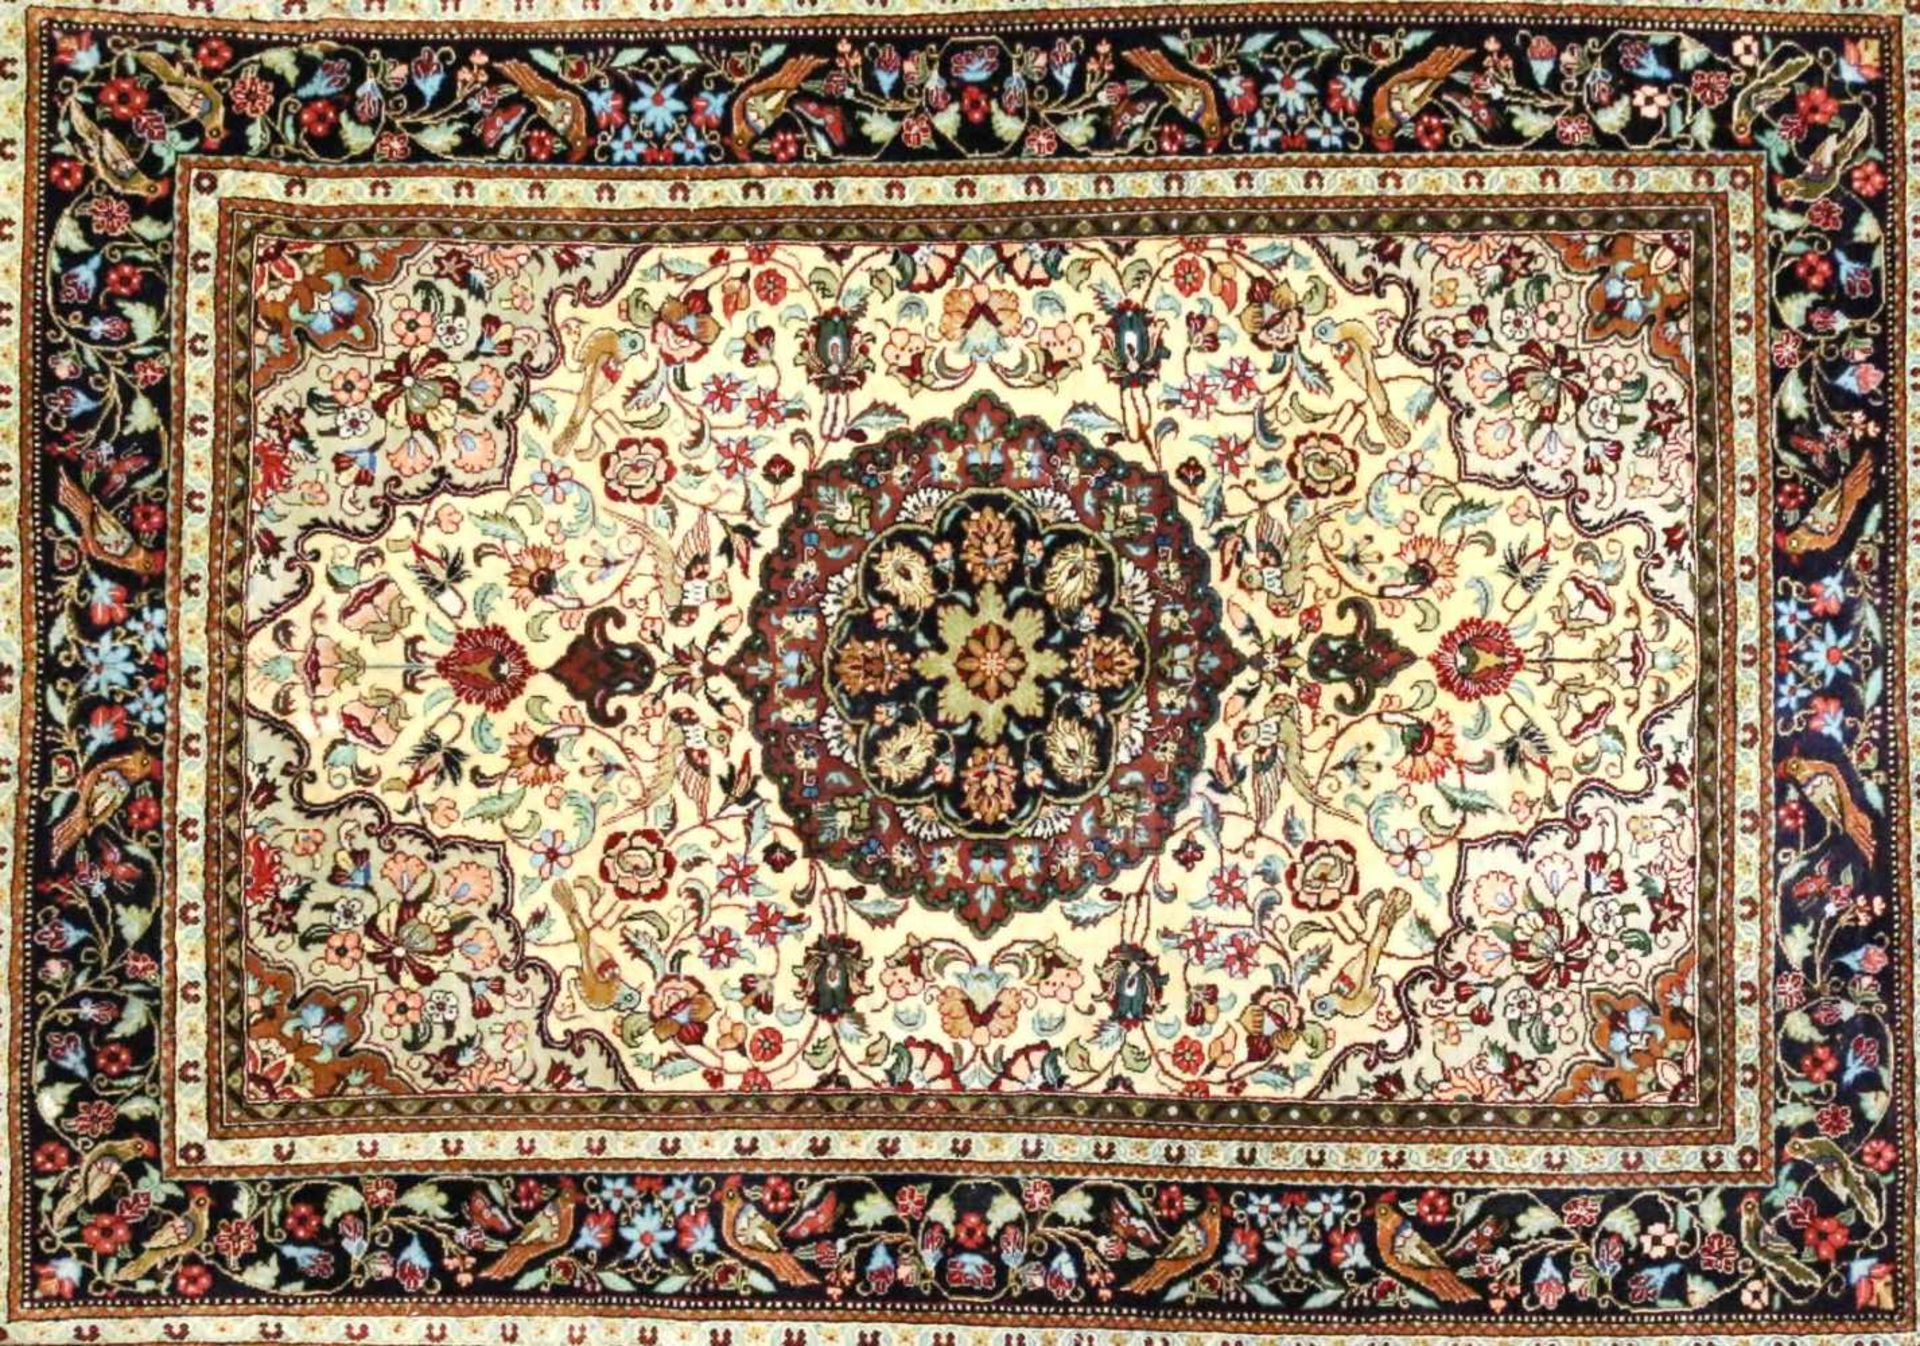 Ghom - Persien - Seide Sehr guter Zustand, Knüpfdichte ca. 850.000 Kn/m². Maße: 80 x 114 cm. - Bild 2 aus 2